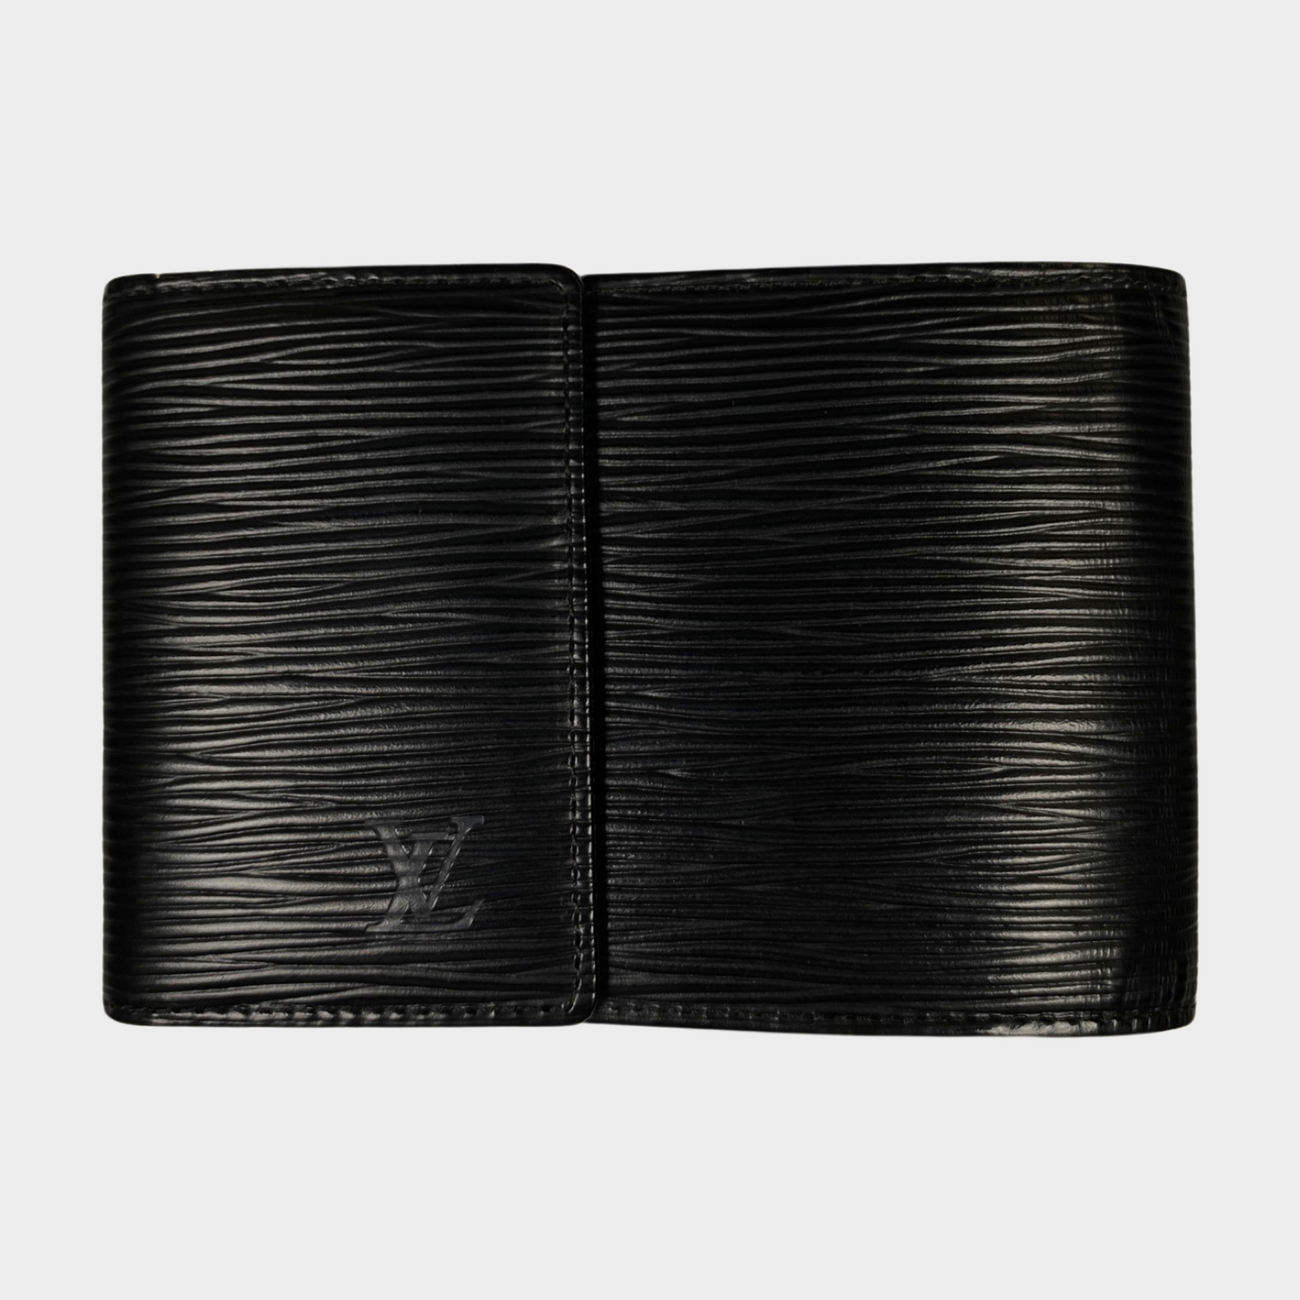 Authentic Louis Vuitton Epi Black Leather Wallet #5464